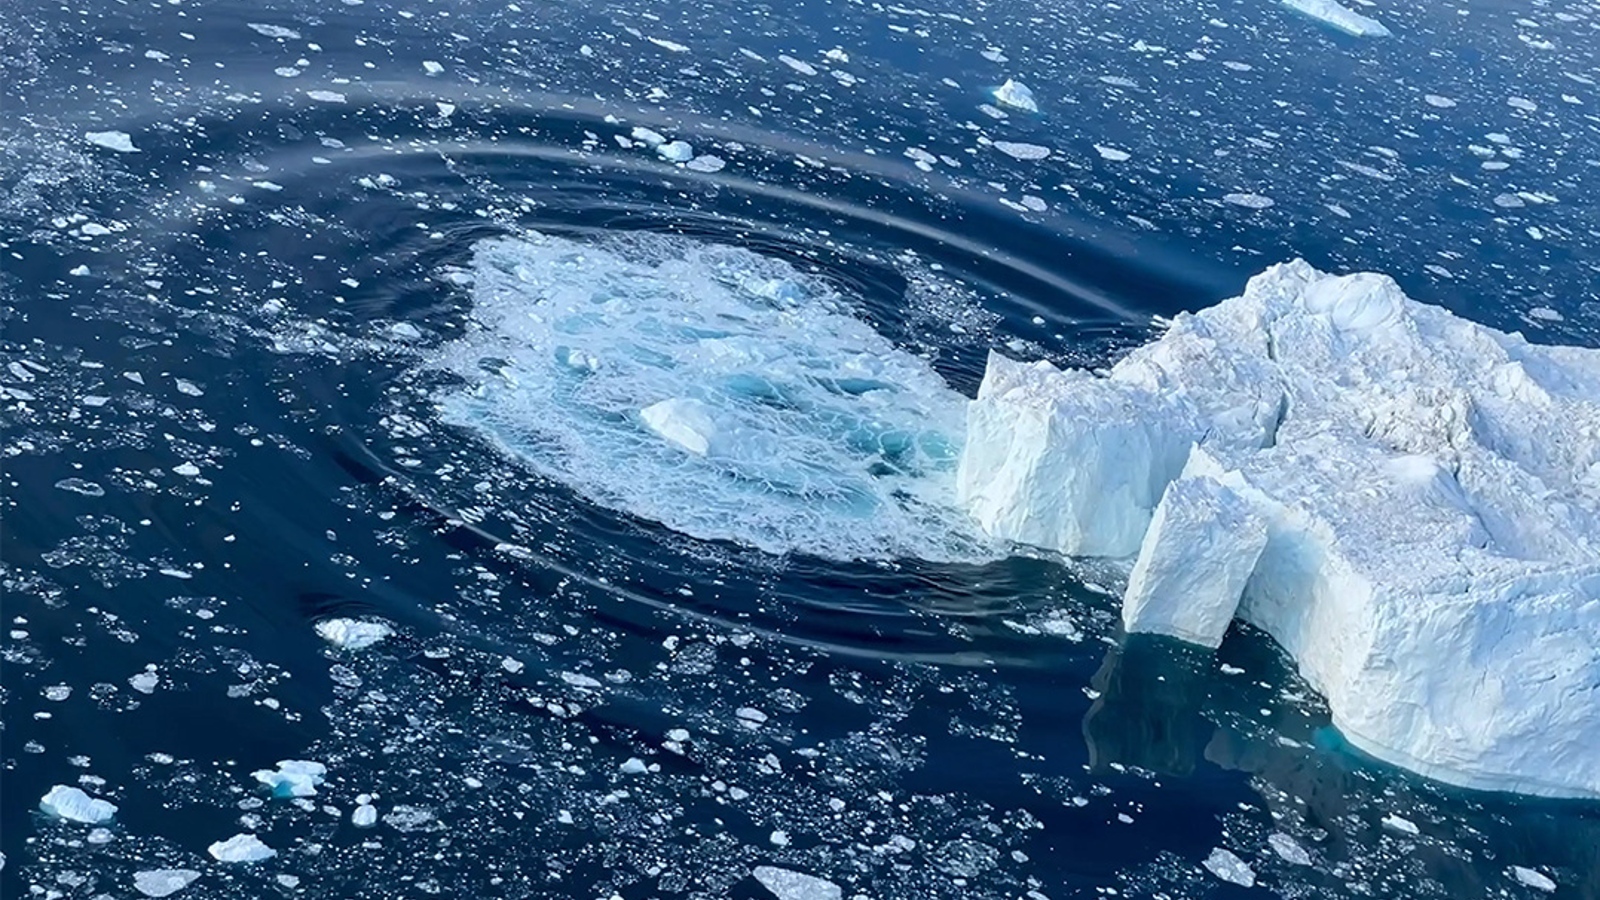 Снимка на голямо парче лед, падащо в морето от ледник, създавайки кръгла вълна